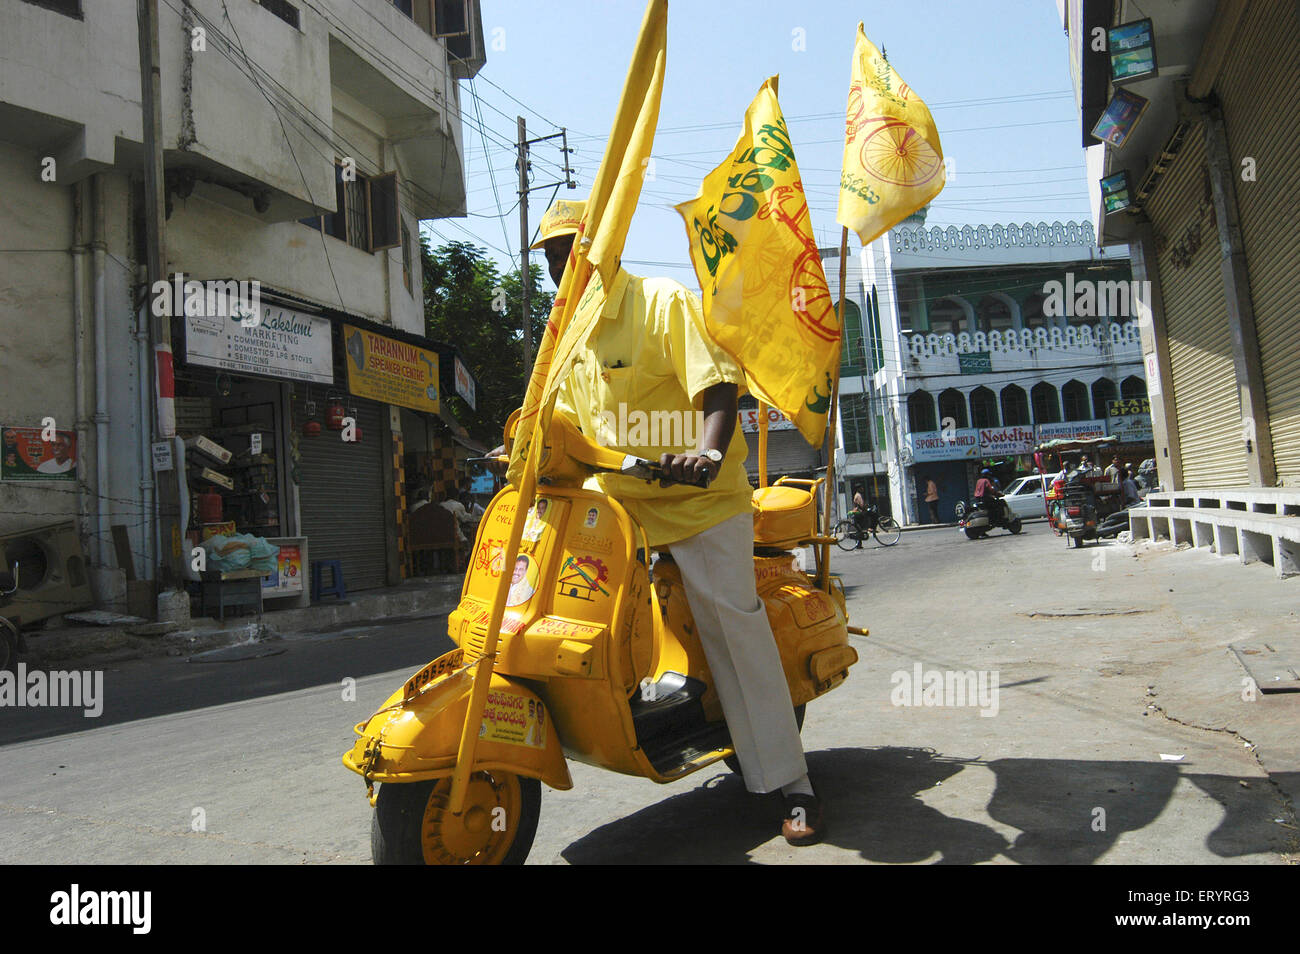 TDP, Telugu Desam Parteiführer D. Nagender gemalt auf Roller für Wahlkampf, Hyderabad, Andhra Pradesh, Telengana, Indien, Asien Stockfoto